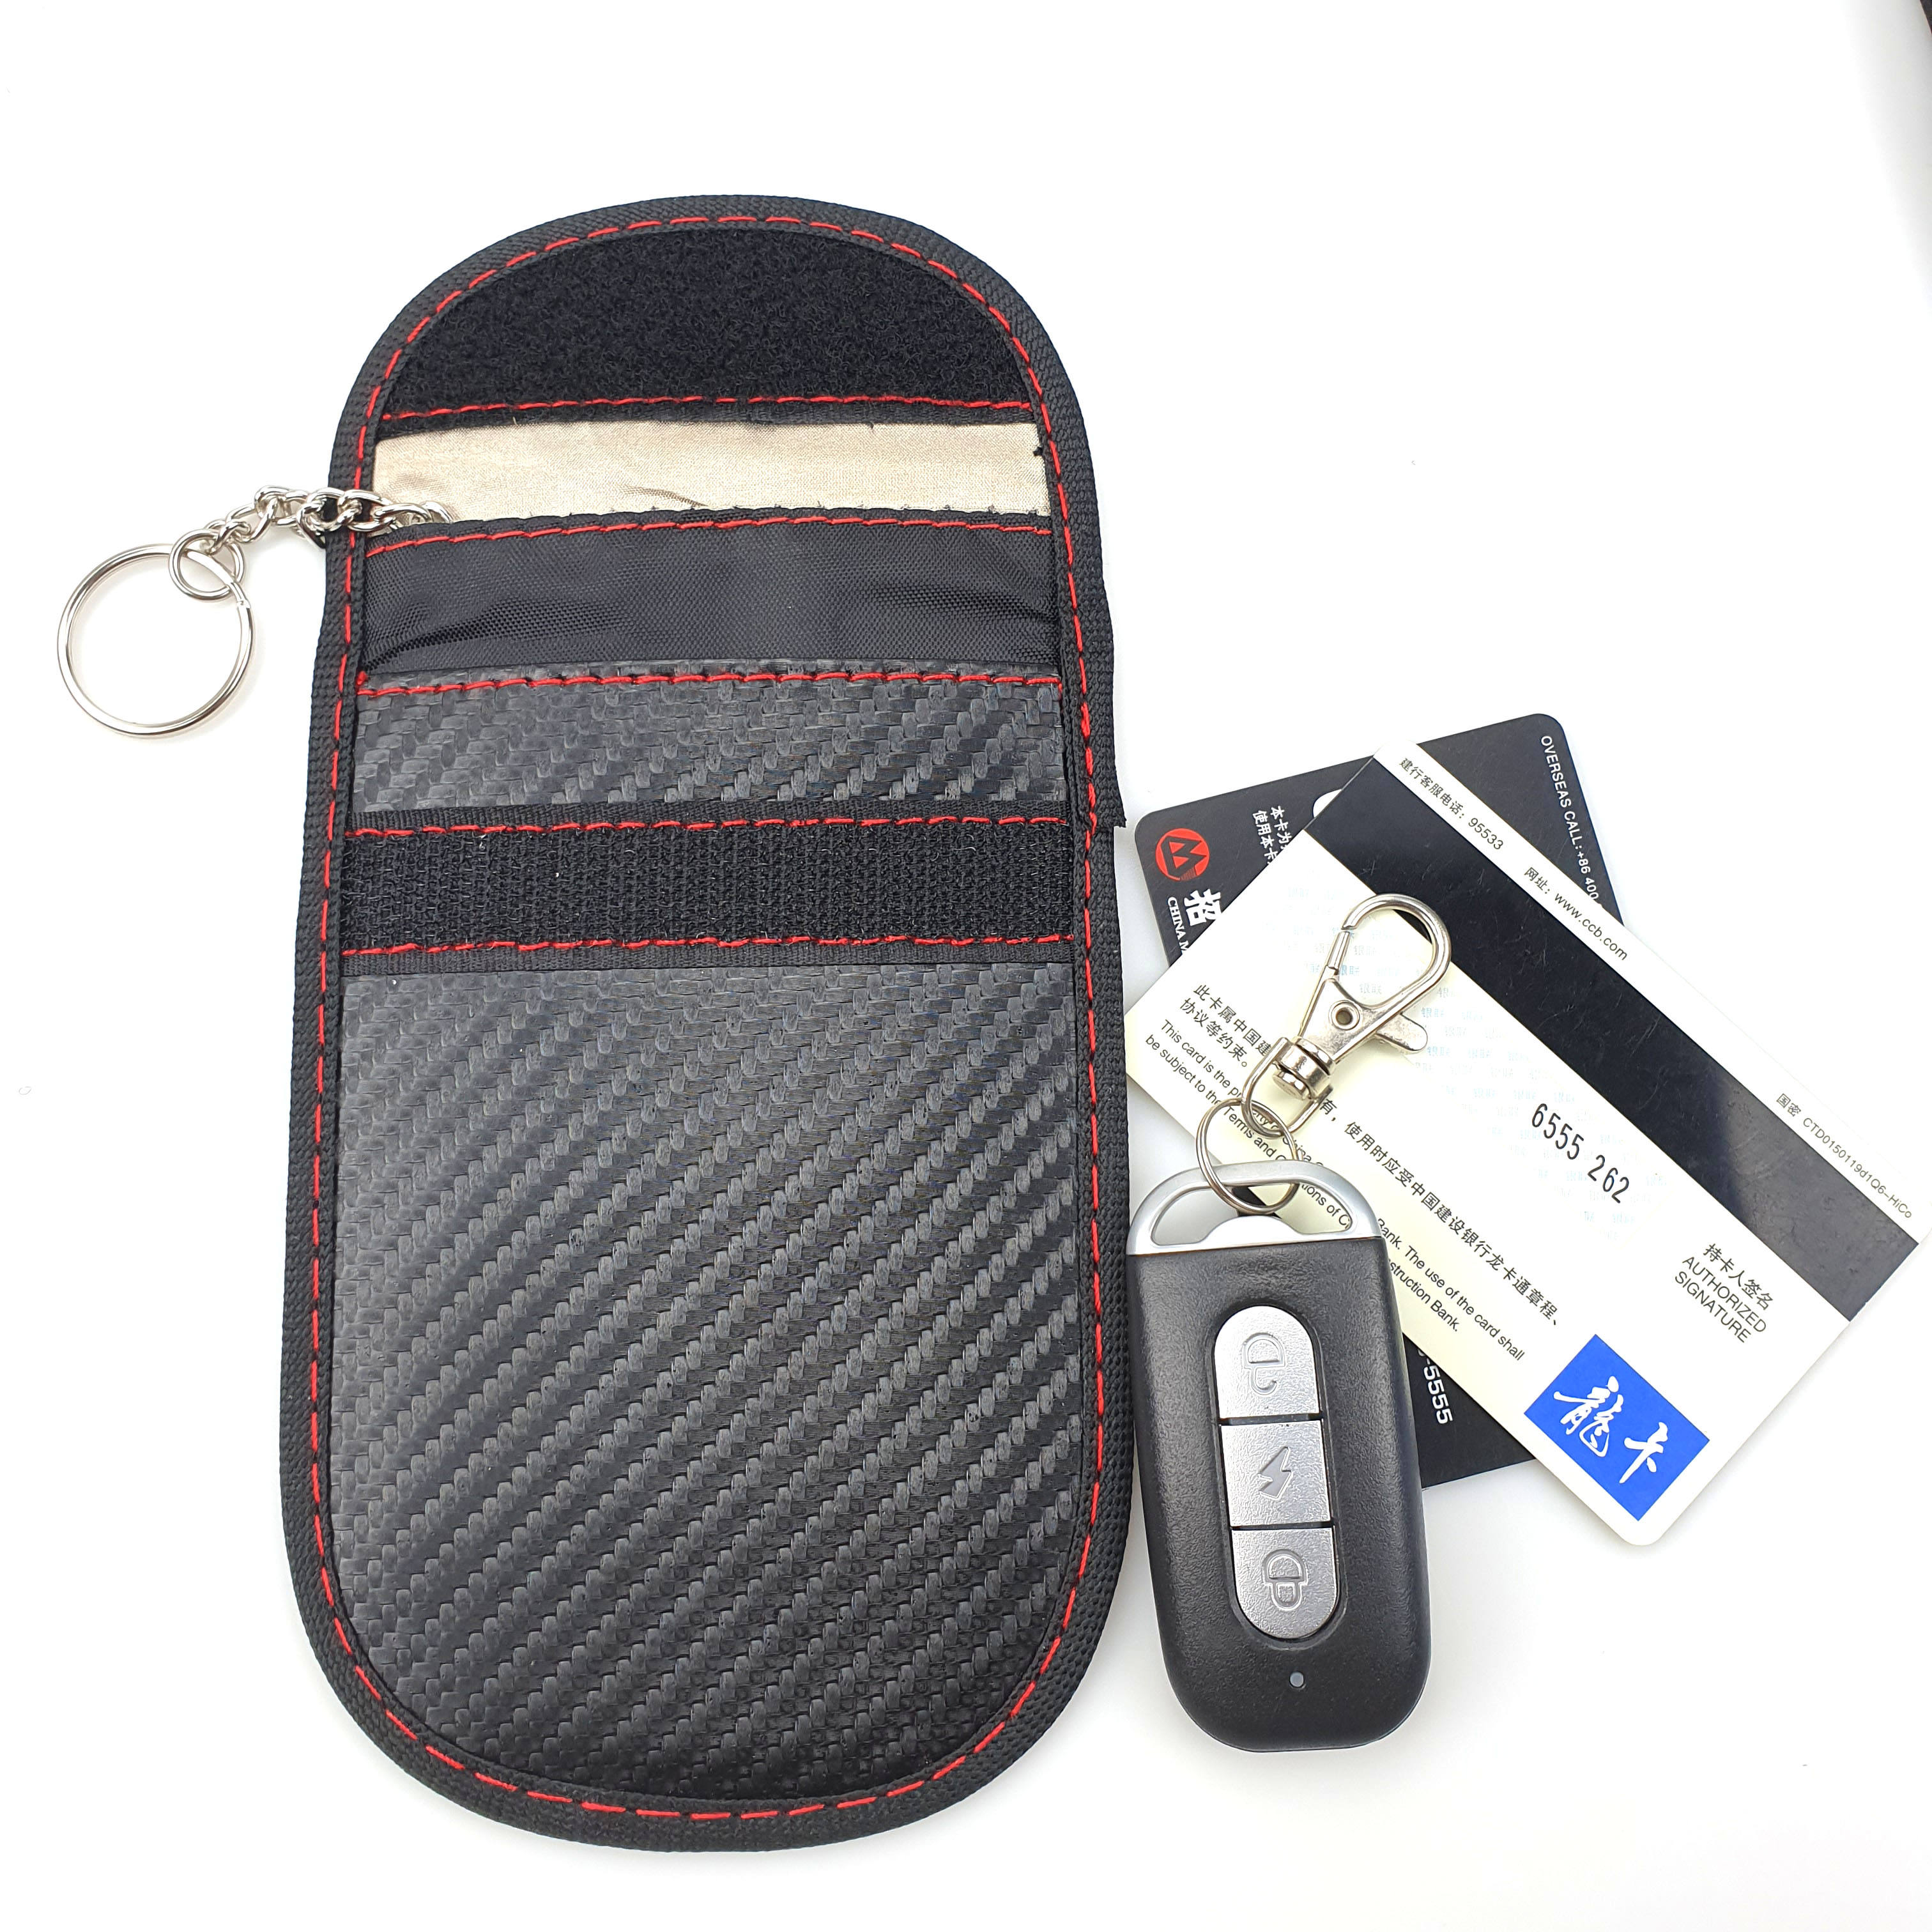 Carbon fiber pattern RFID signal shielding key case faraday pouch anti-theft car key wallet car key signal blocker